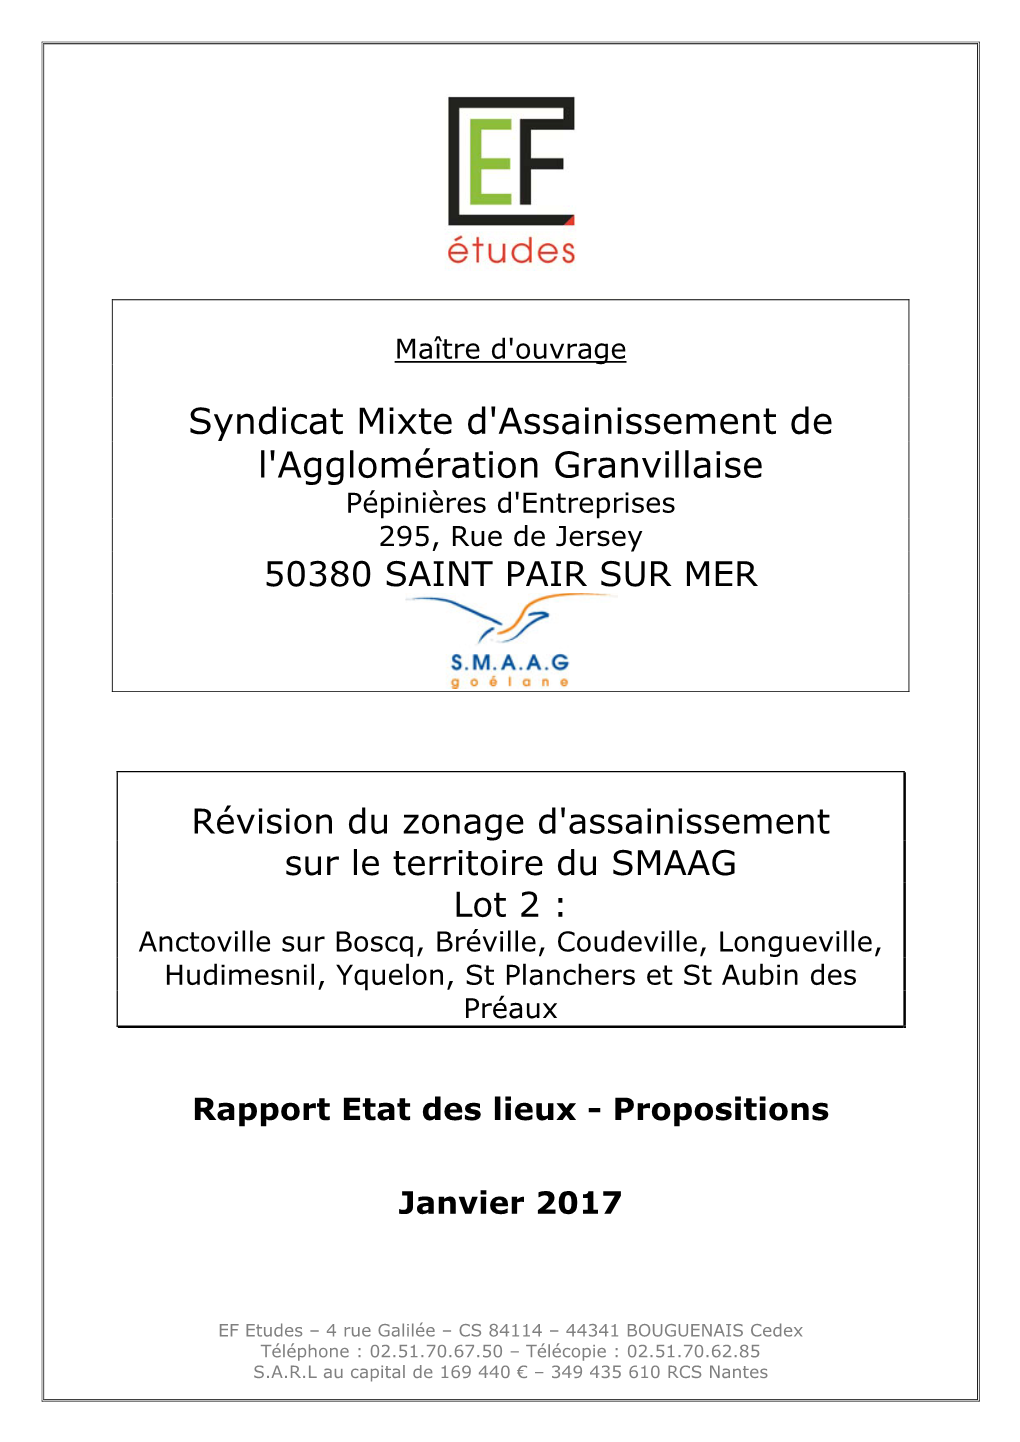 Rapport Etat Des Lieux Propositions Lot 2 Janvier 2017